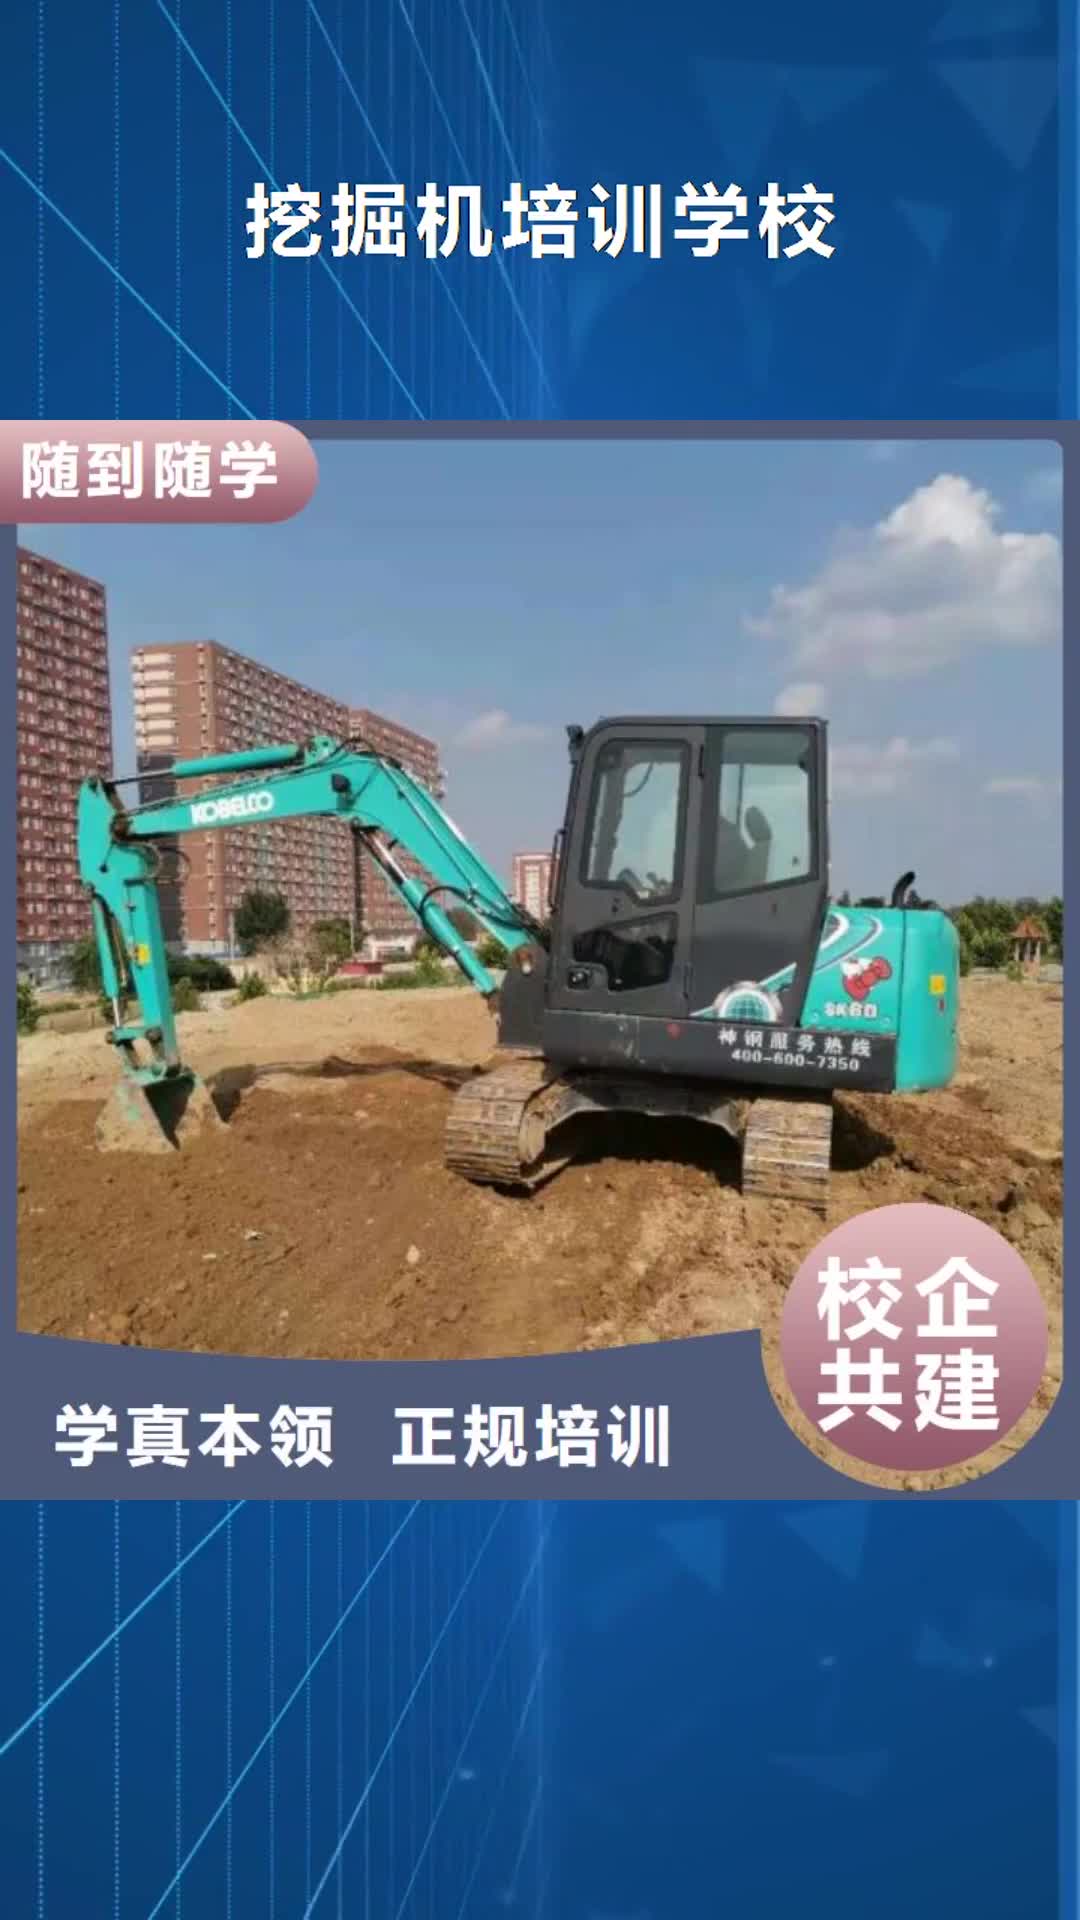 长沙【挖掘机培训学校】,焊工焊接培训学校哪家好就业快